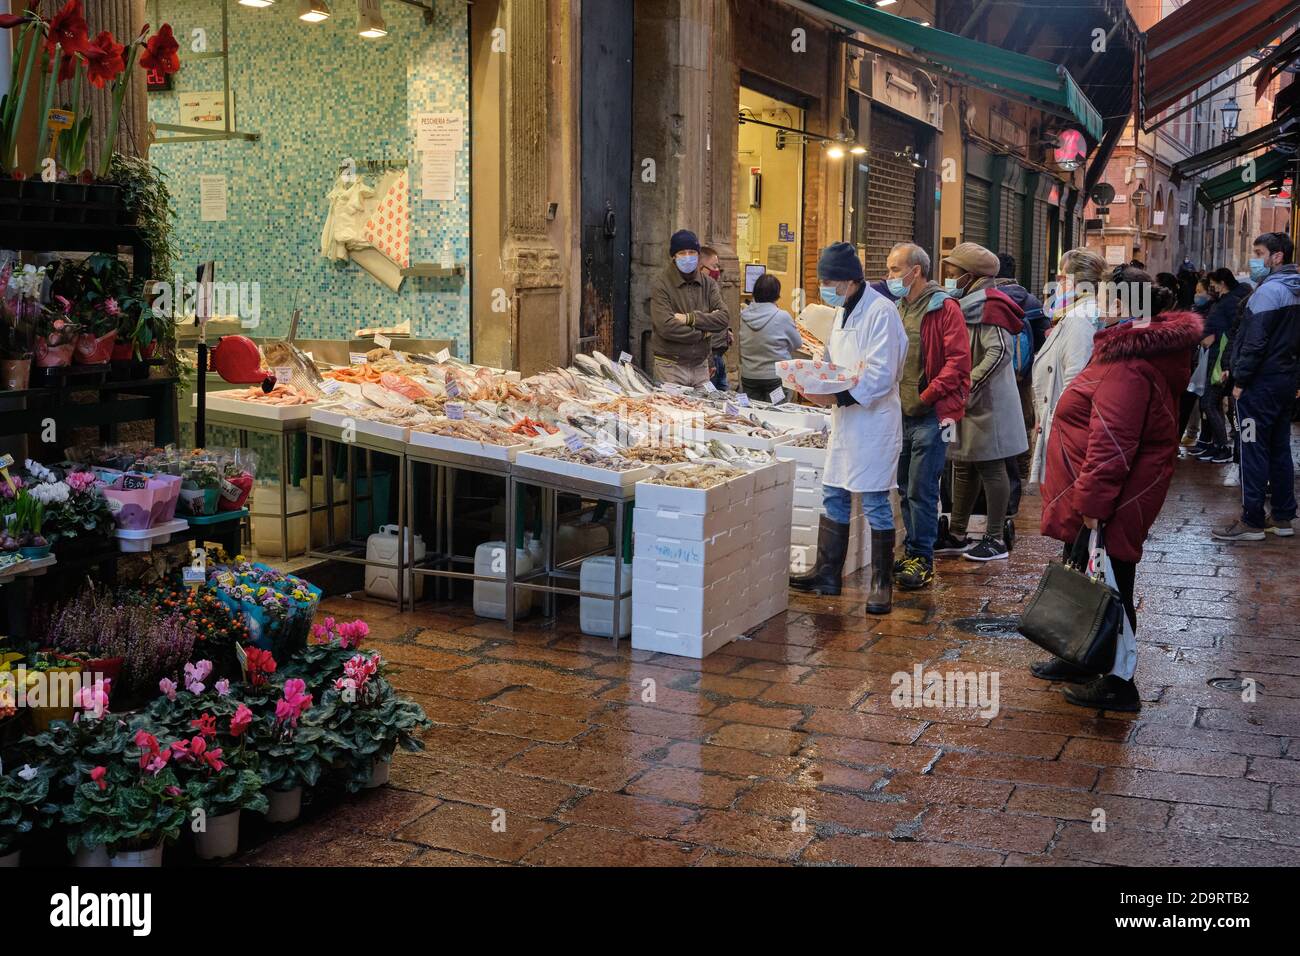 Bologna, Italien - Oktober 31 2020:zentraler Bereich der mittelalterlichen Stadt, genannt das Viereck, wo Sie viele Lebensmittelgeschäfte in den engen Gassen finden können Stockfoto